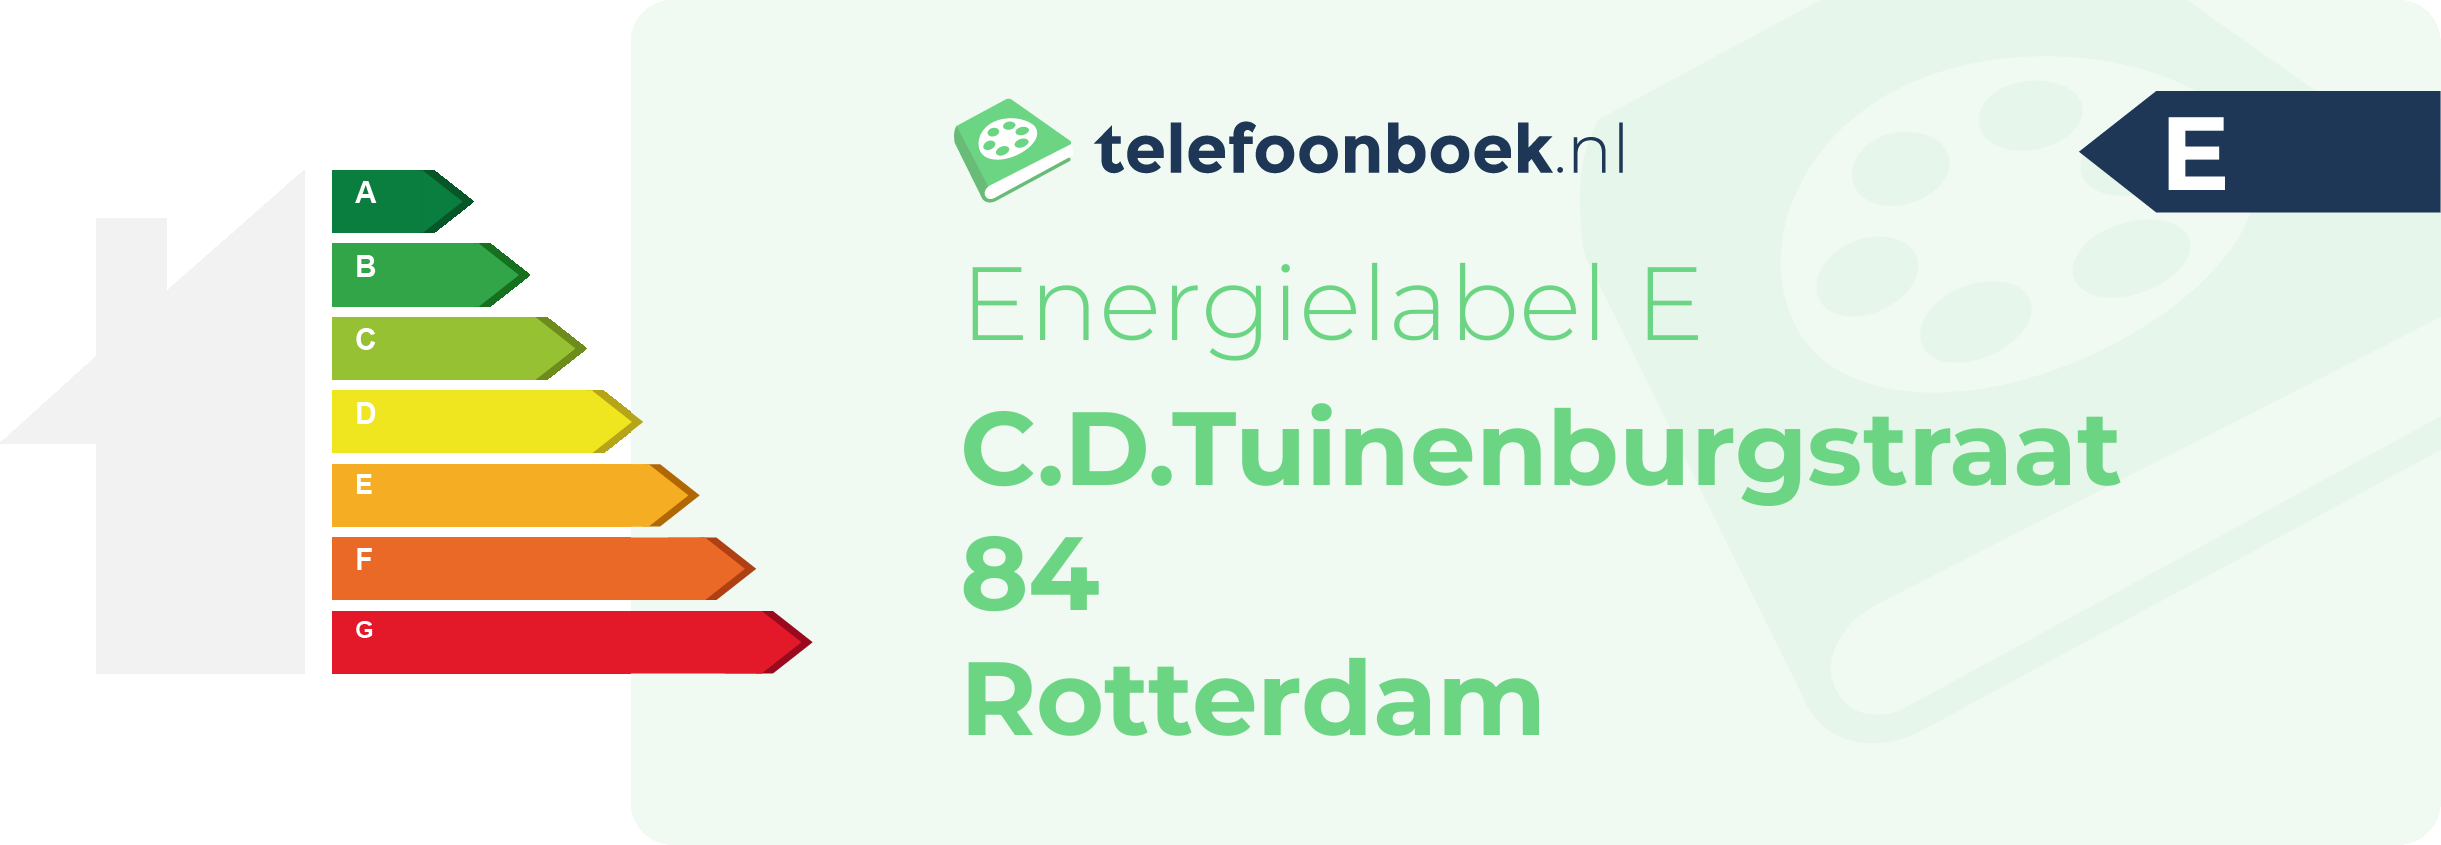 Energielabel C.D.Tuinenburgstraat 84 Rotterdam